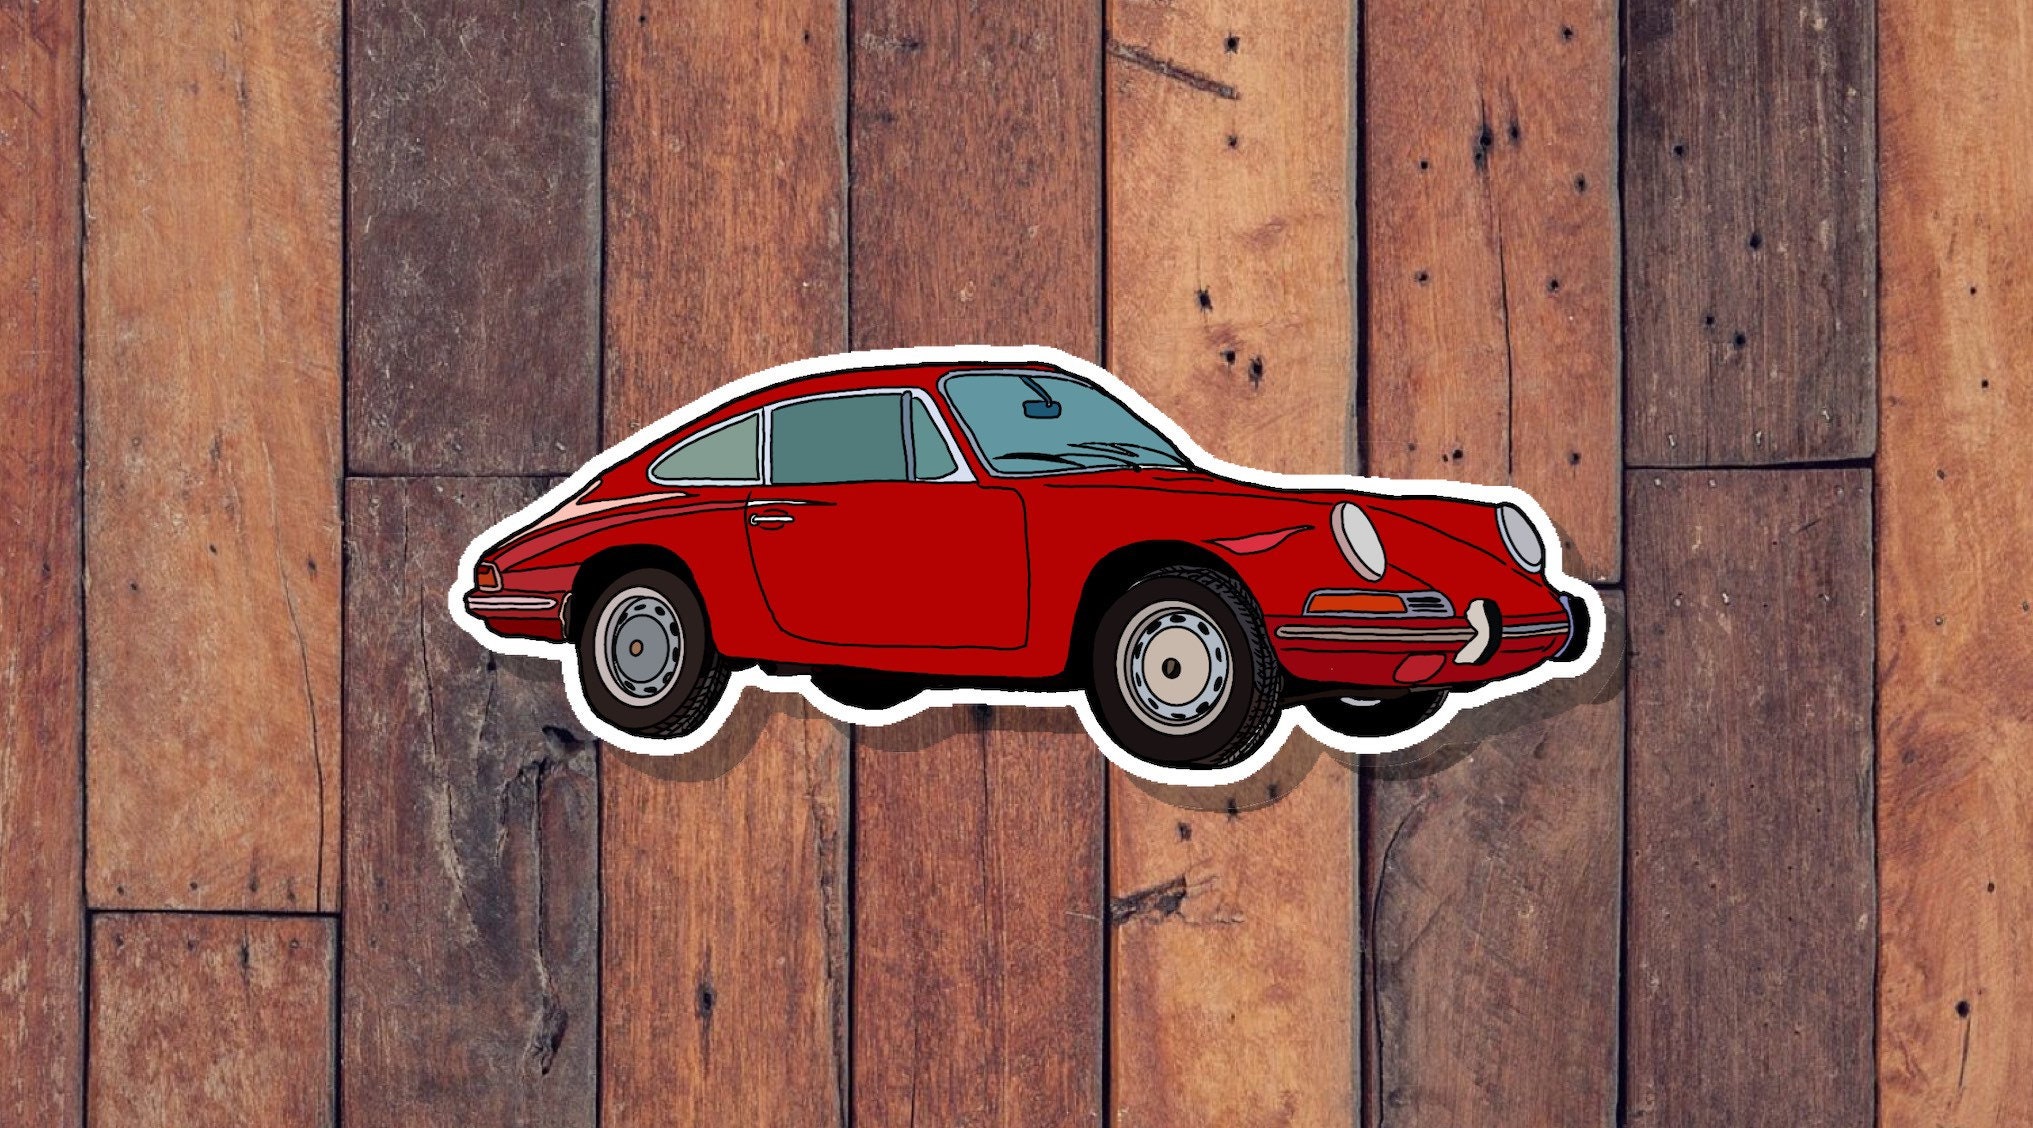 Red Porsche 912 Vinyl Sticker, Automotive Gift, Car Sticker, Trendy  Sticker, Laptop Decal, Funny Sticker, Vintage Cars